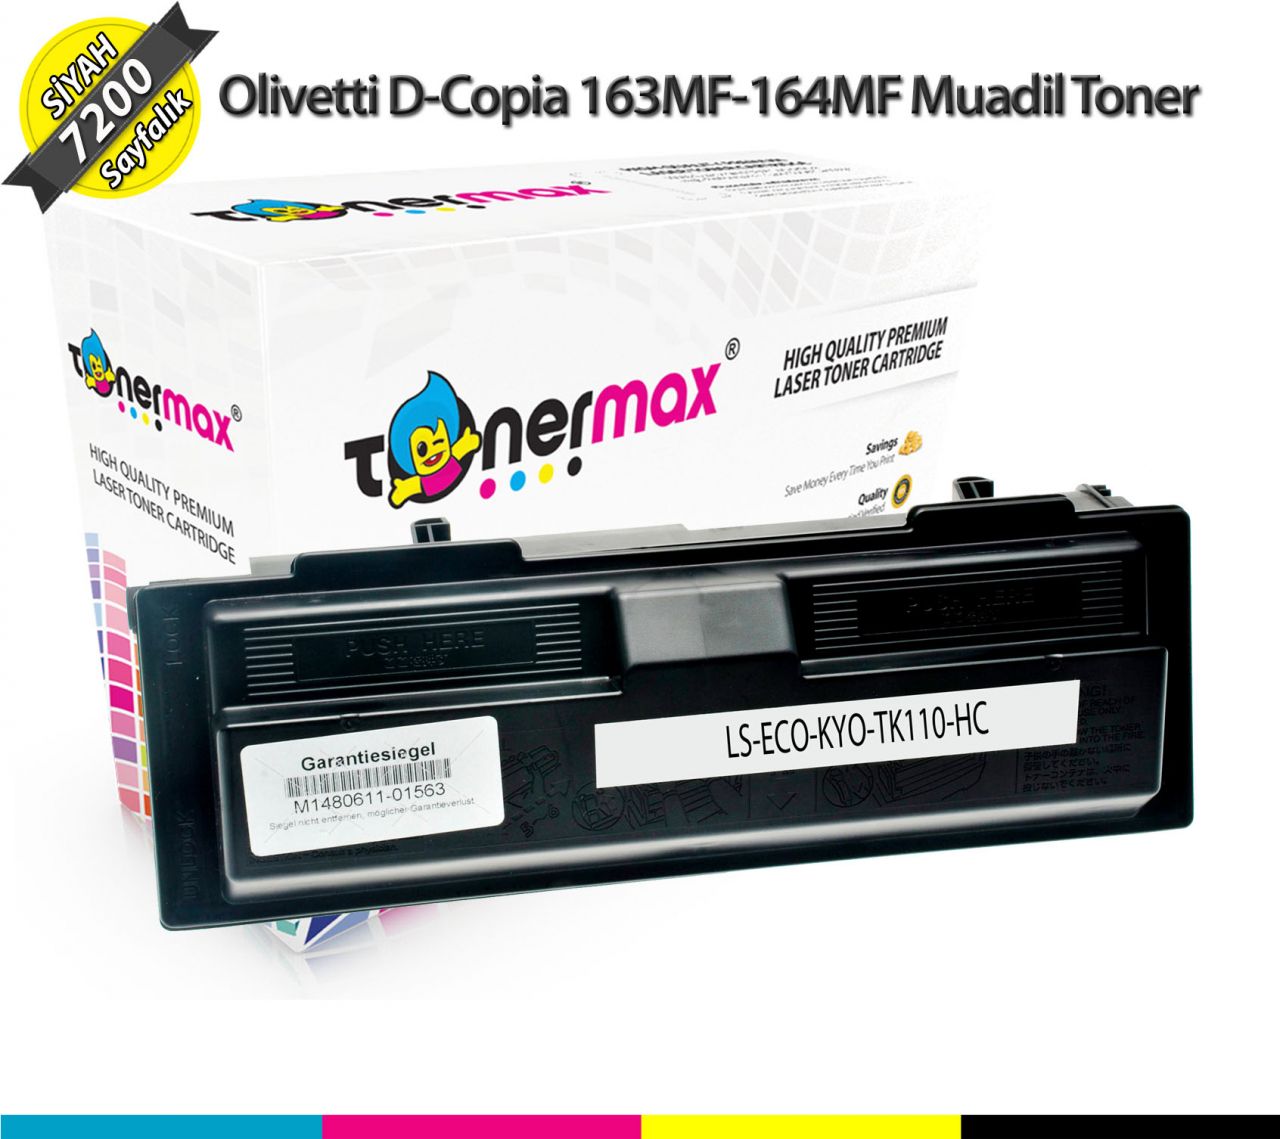 Olivetti D-Copia 18MF / 163MF / 164MF / B0526 Muadil Toner